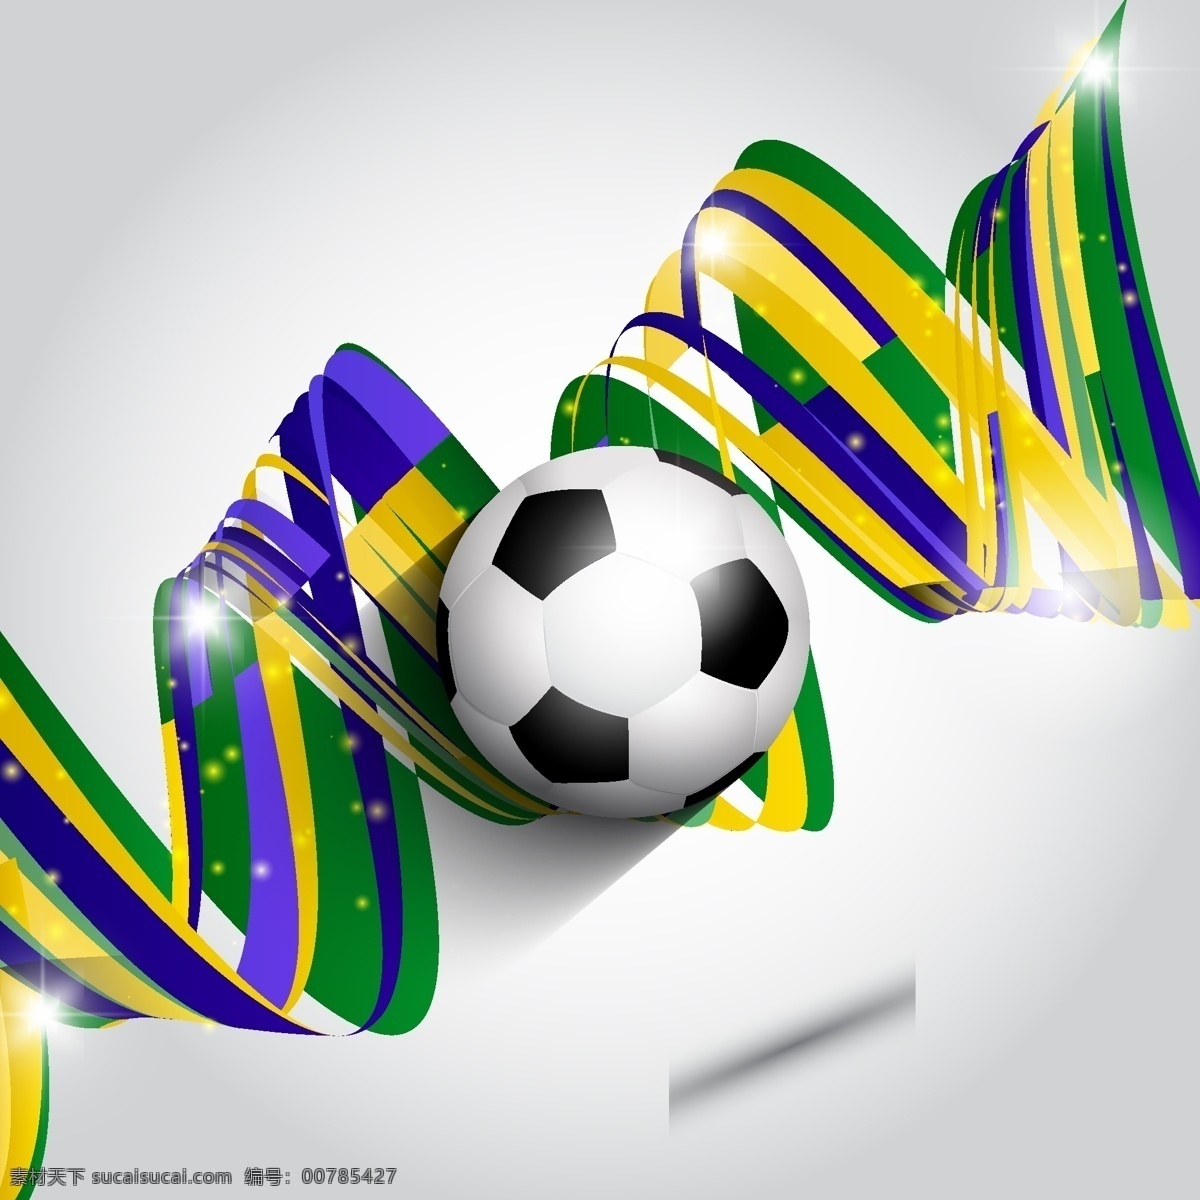 时尚 花纹 足球 模板下载 时尚花纹 巴西 世界杯 足球赛事 足球比赛 体育运动 生活百科 矢量素材 白色